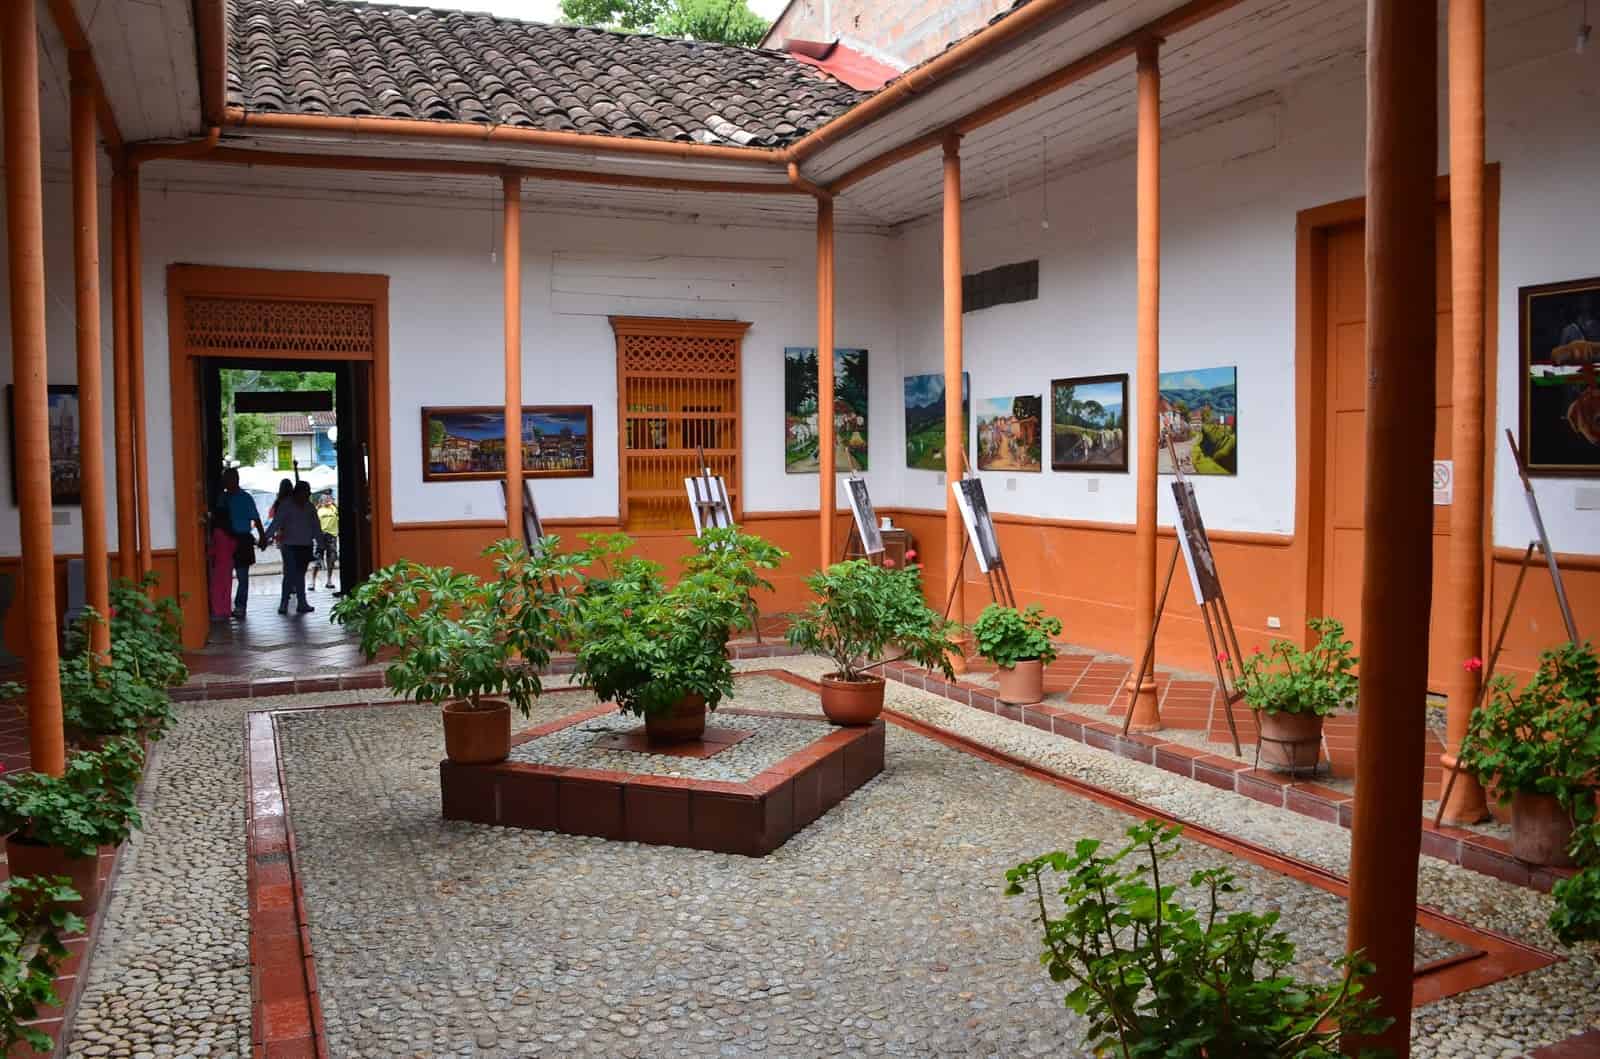 Courtyard at the Clara Rojas Museum